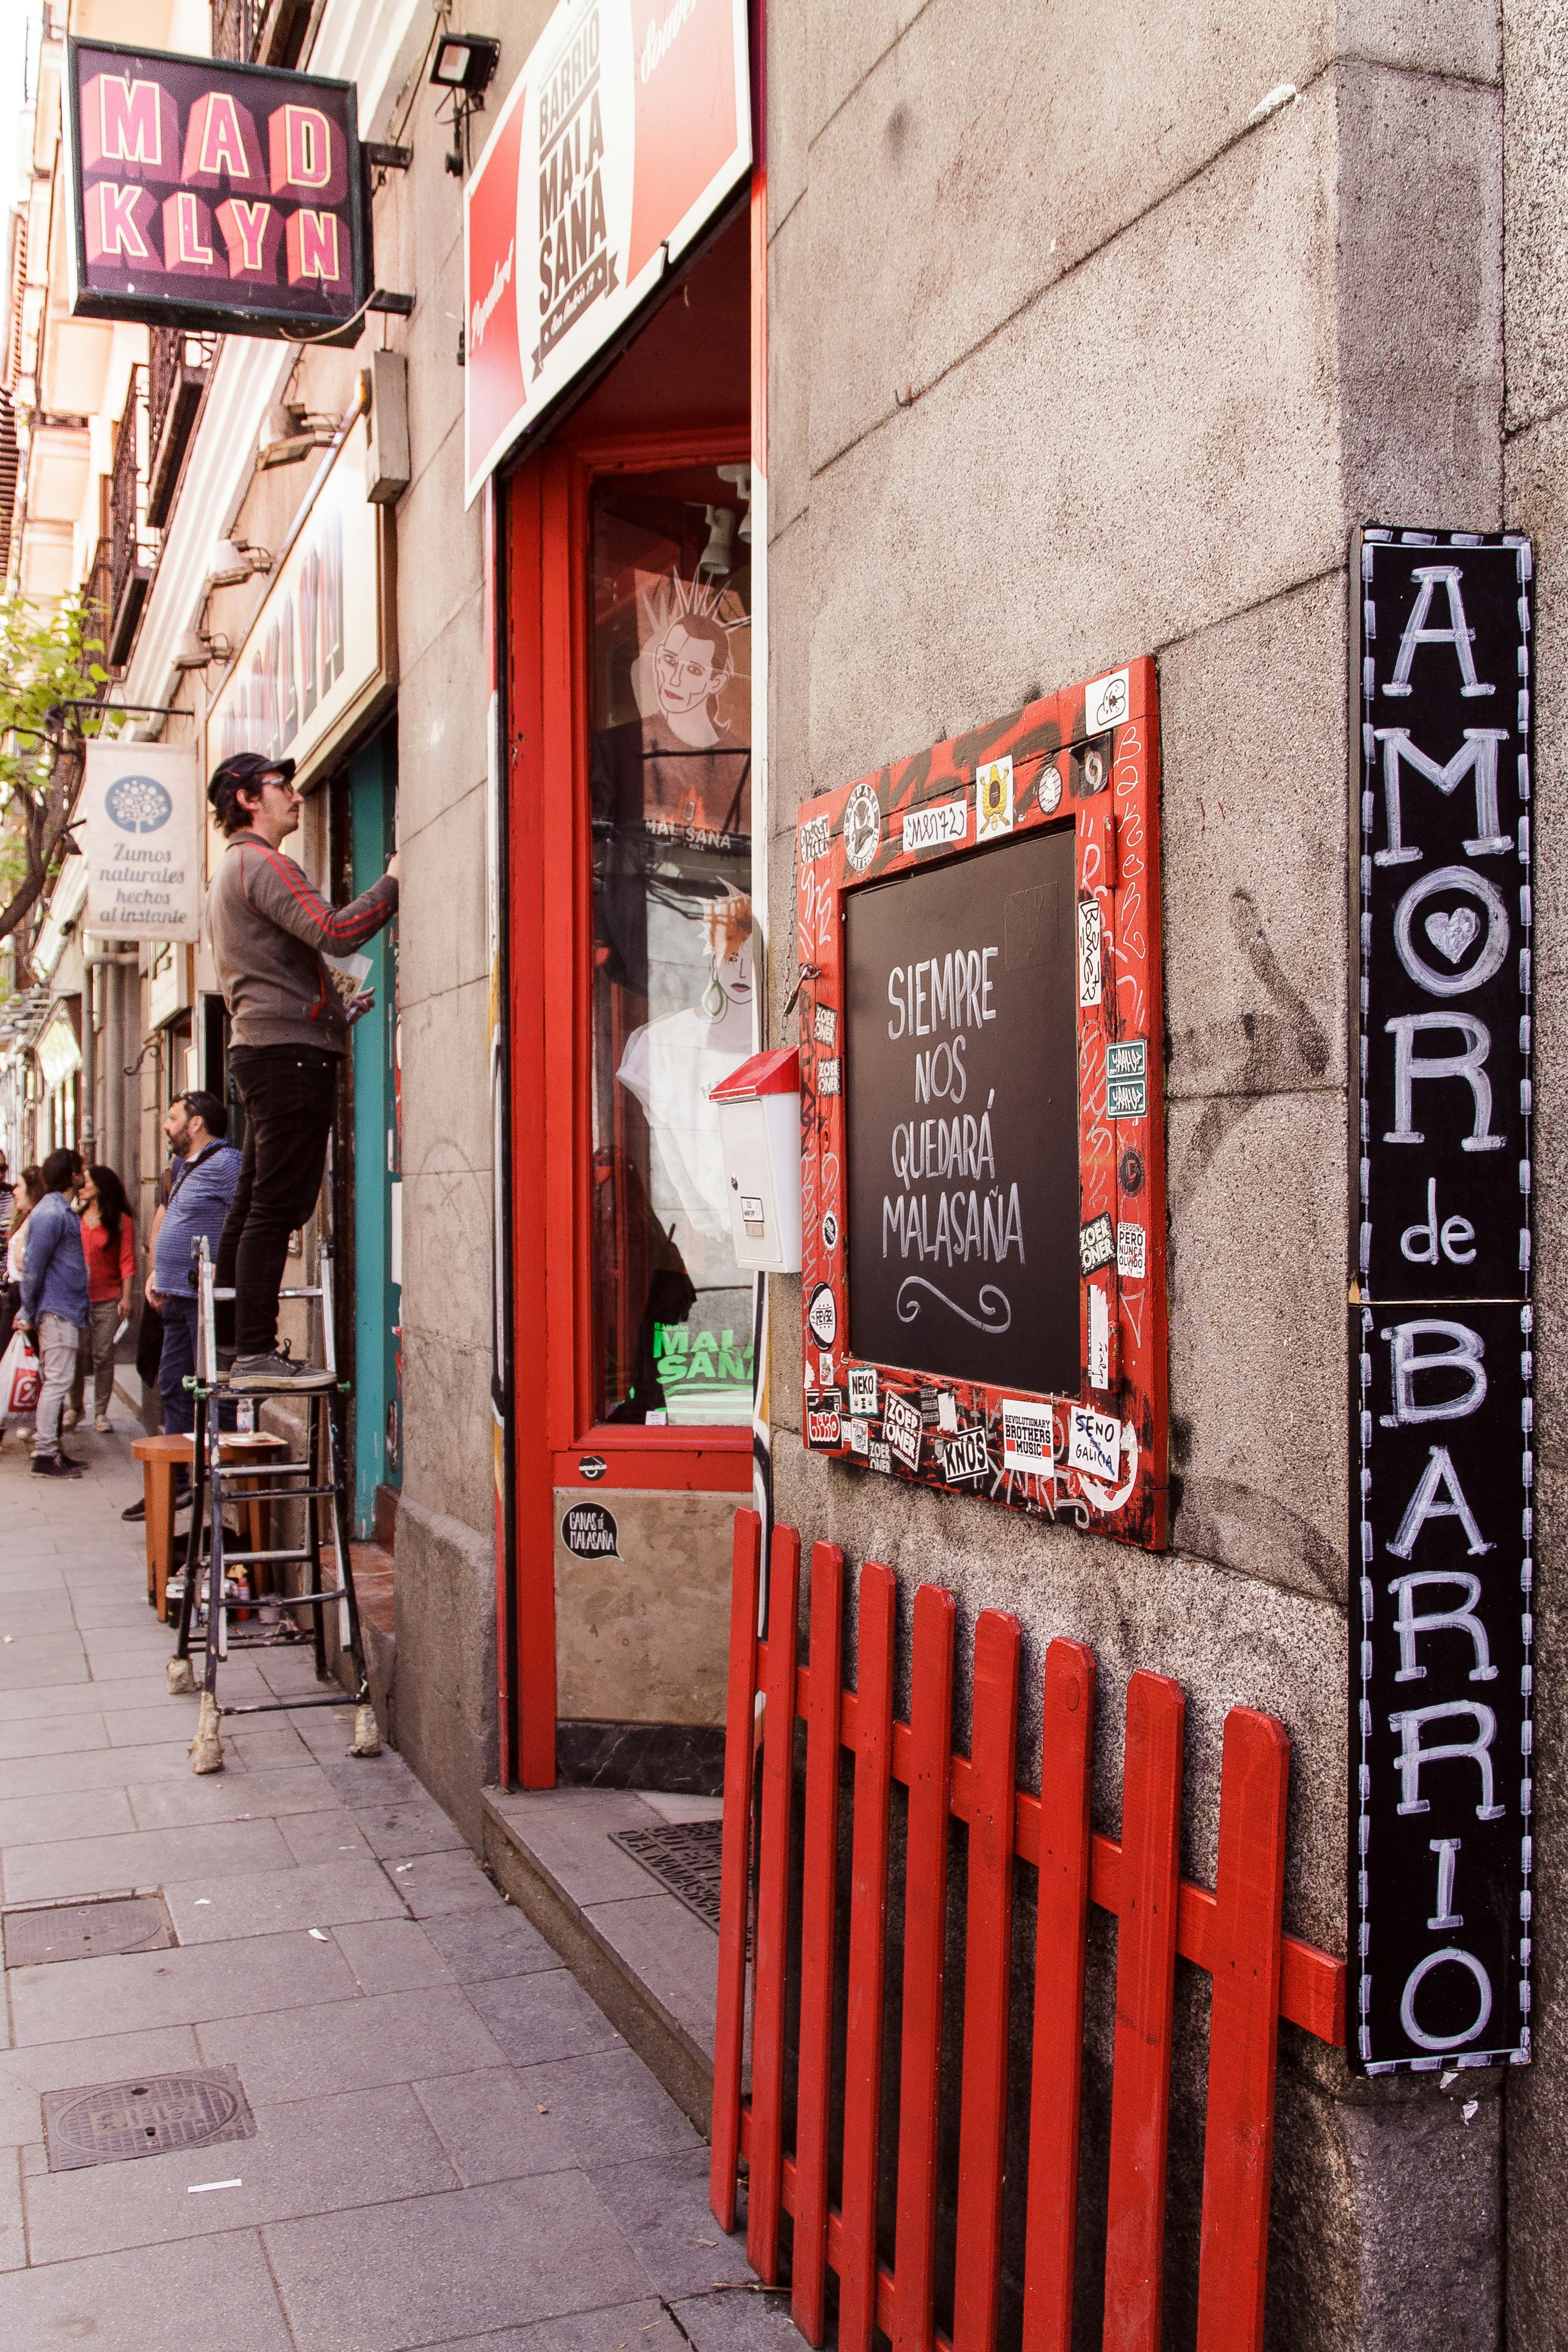 A graffiti street shop in Malasana, Madrid 